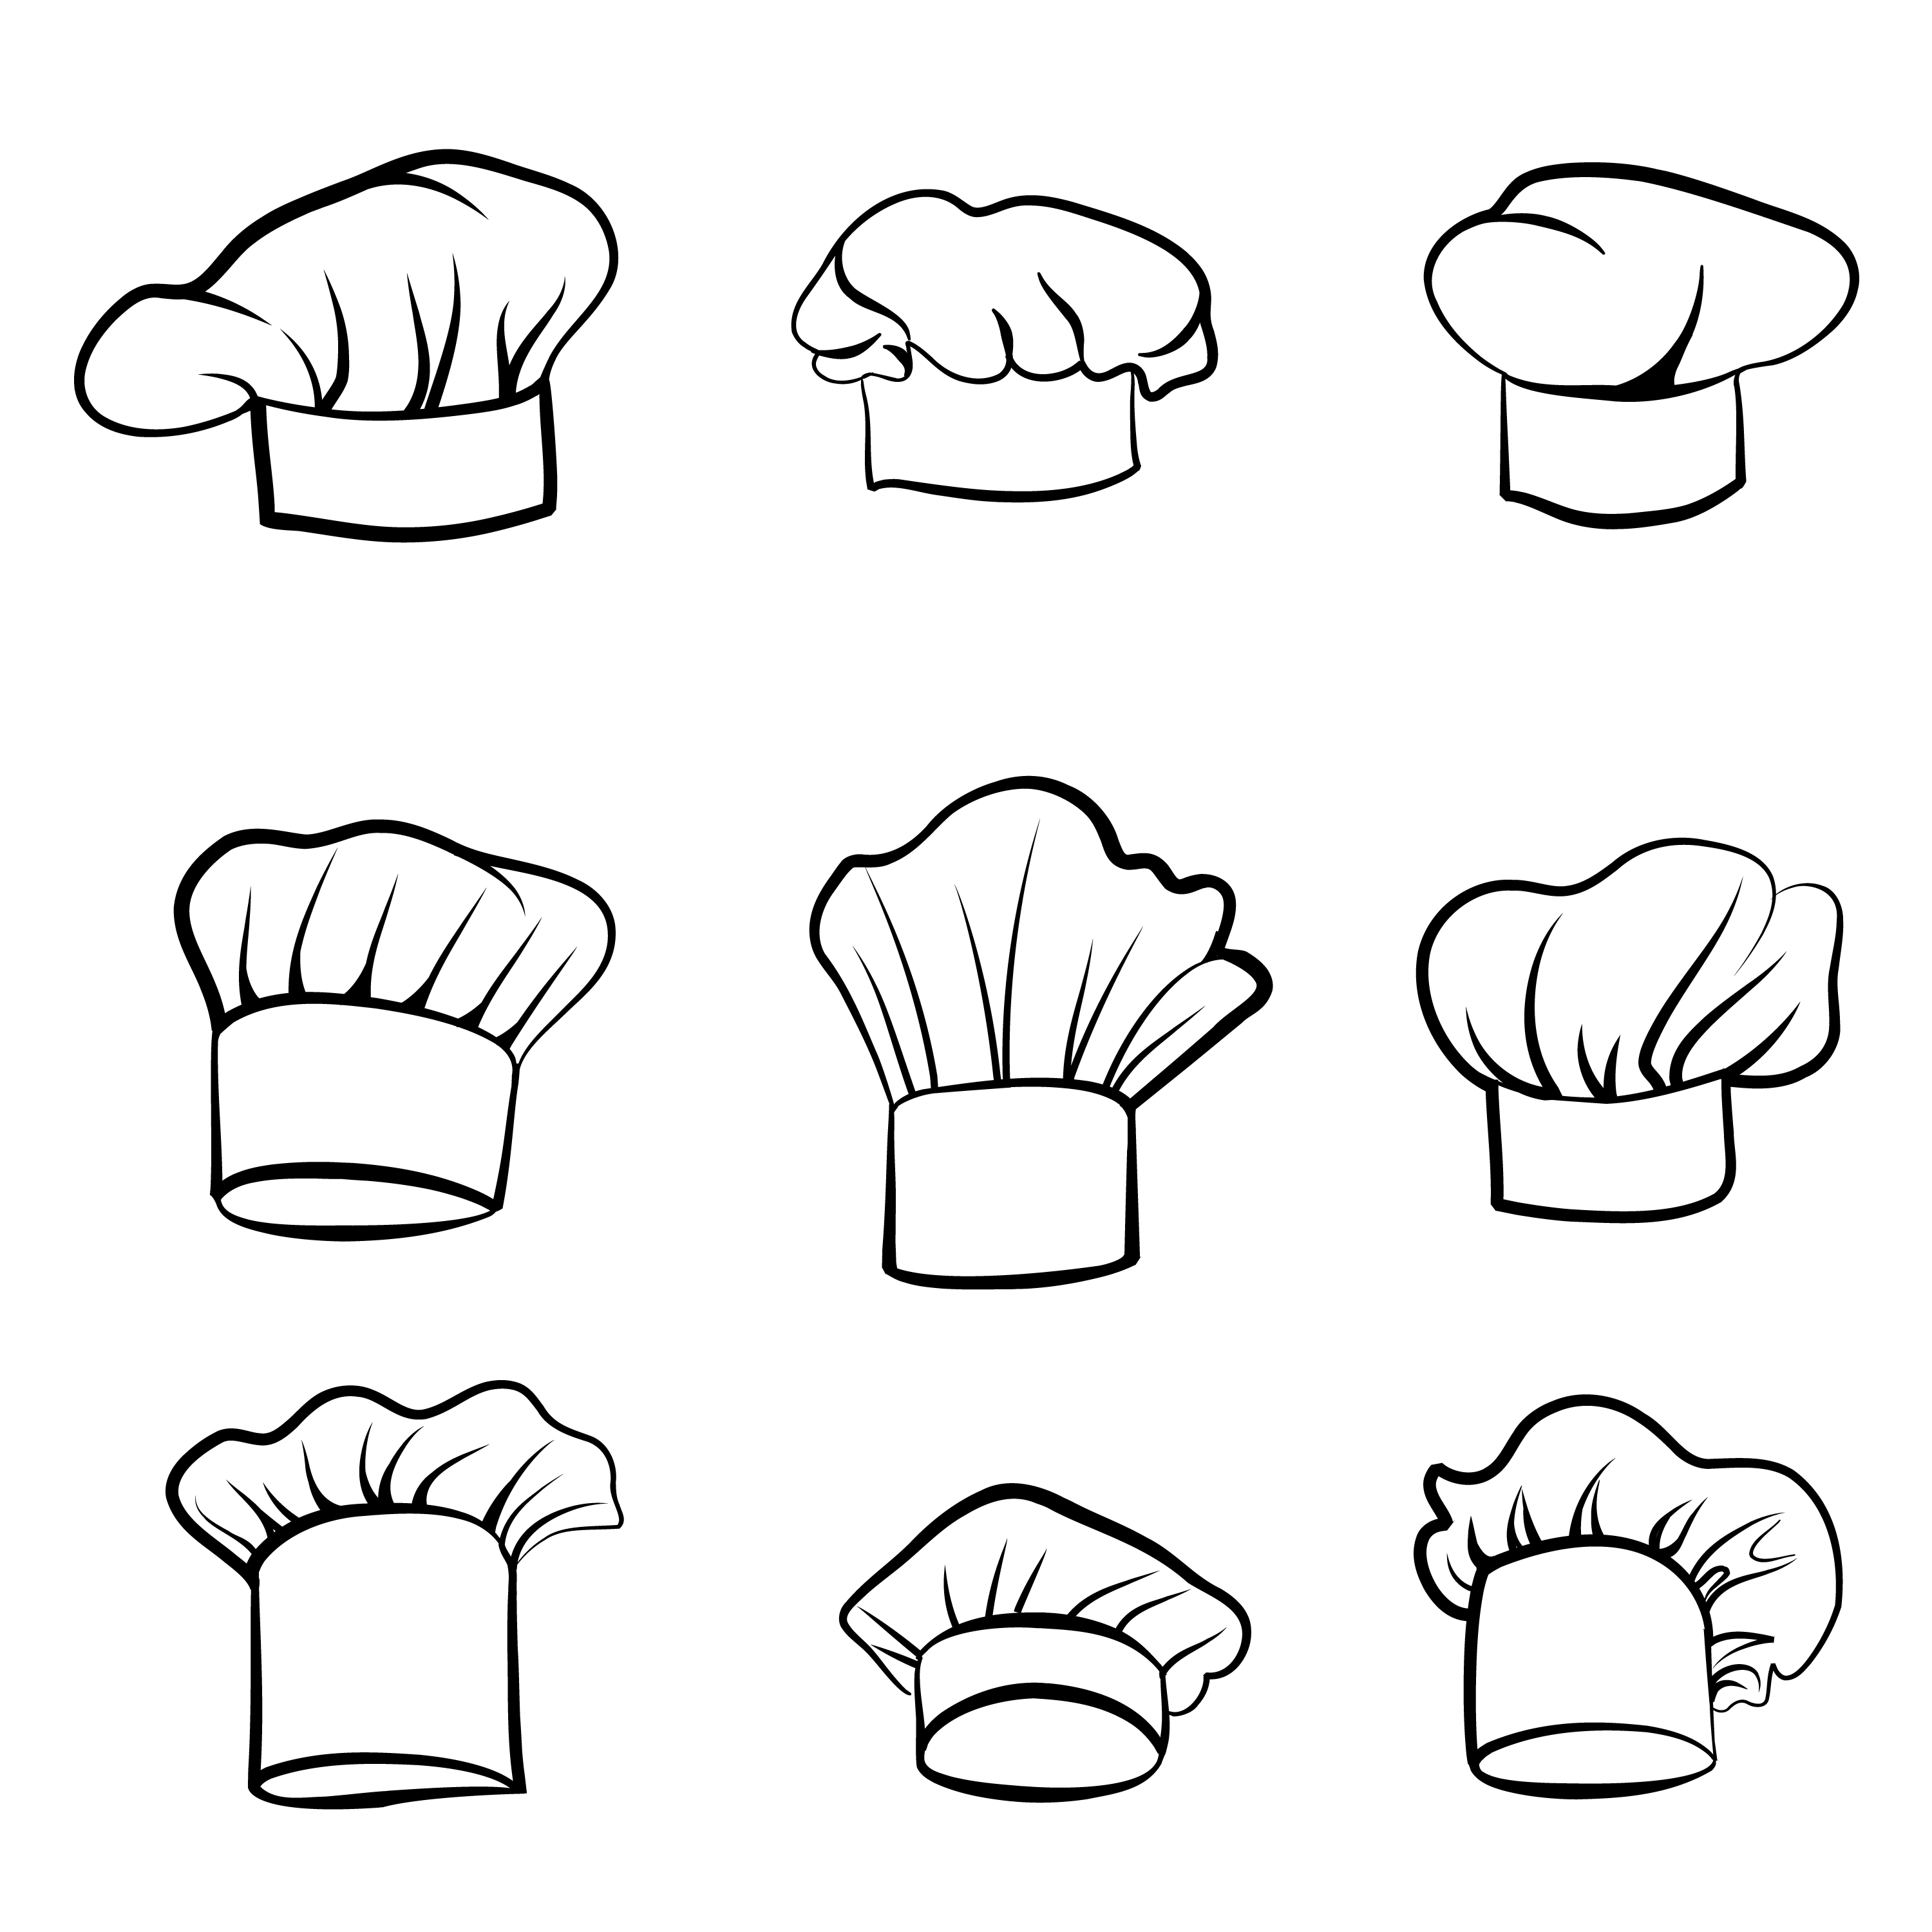 https://static.vecteezy.com/ti/vecteur-libre/p3/511957-chapeau-de-cuisine-chapeau-dessine-chef-cuisinier-chapeau-chef-cuisinier-signes-de-cuisine-vectoriel.jpg